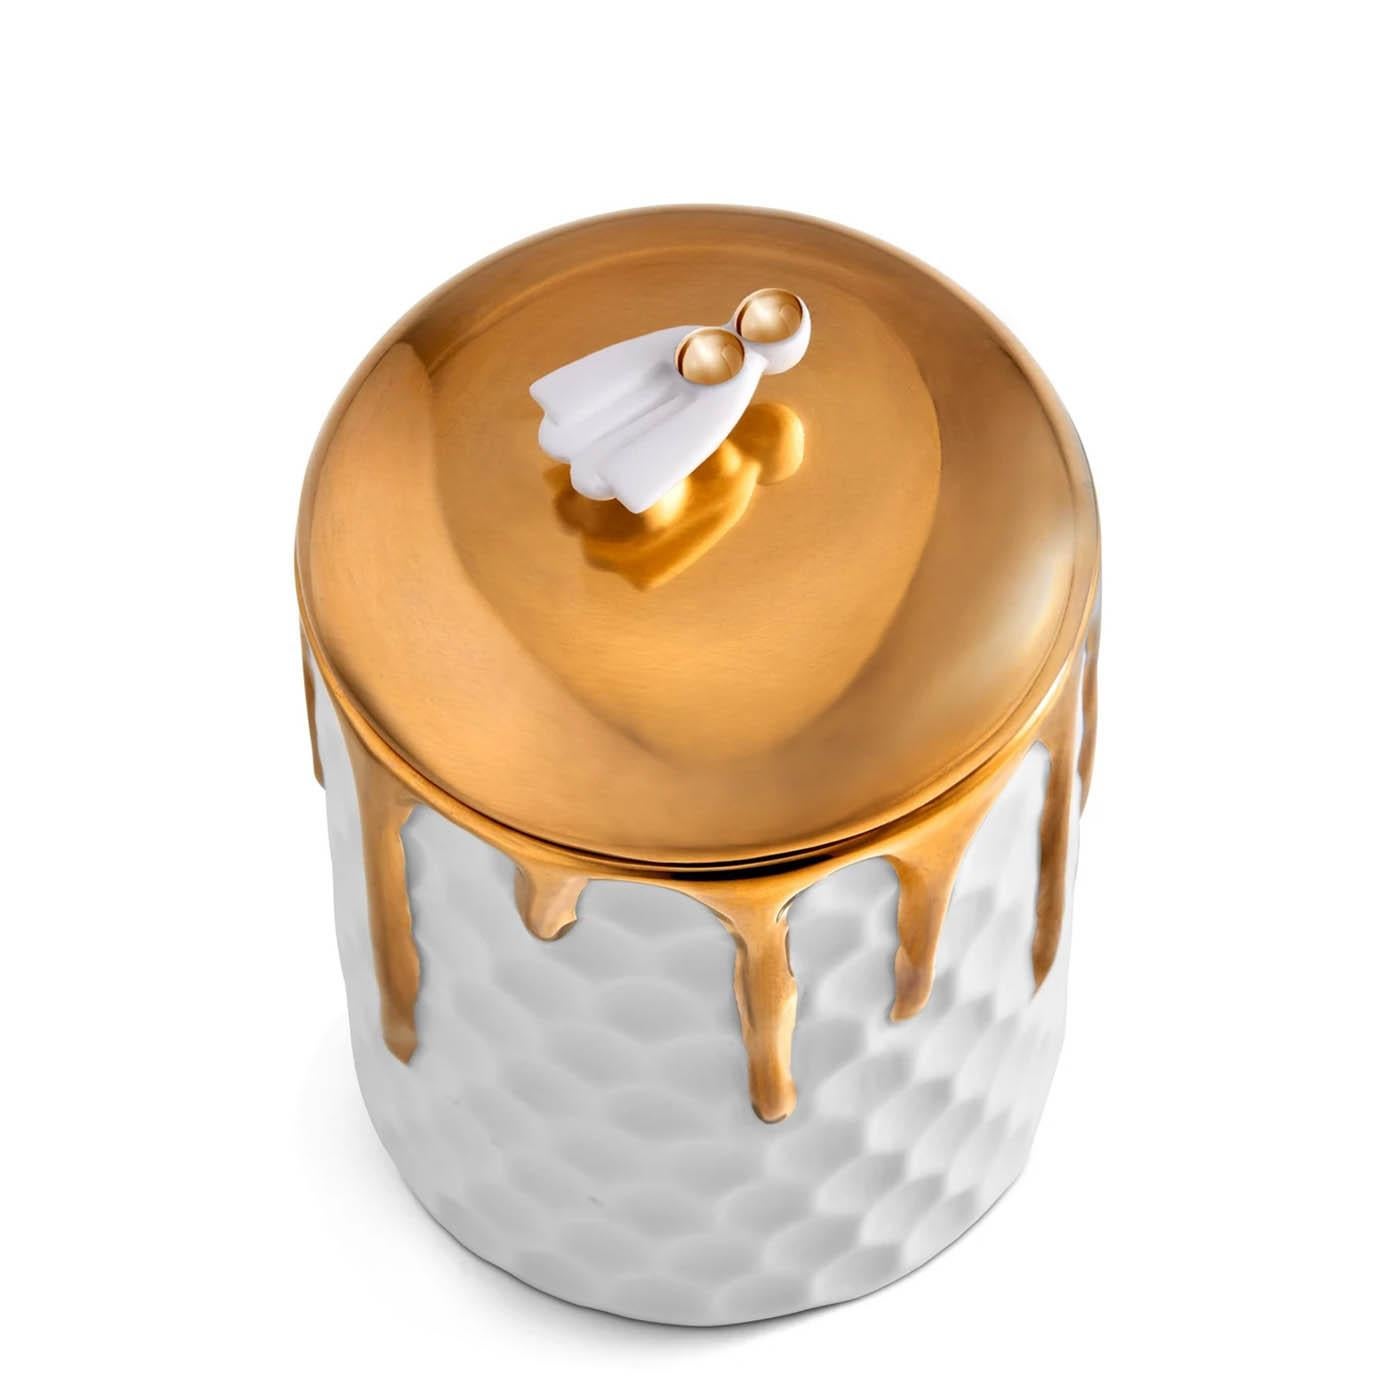 Kerze Box Golded Bee aus Porzellan mit Biene auf
den Deckel. Deckel aus 24 24 Karat vergoldet. Aus weißem Porzellan 
und in 24 Karat vergoldet. Einschließlich Paraffinwachs mit einfacher 
docht. Wird in einer luxuriösen Geschenkbox geliefert.